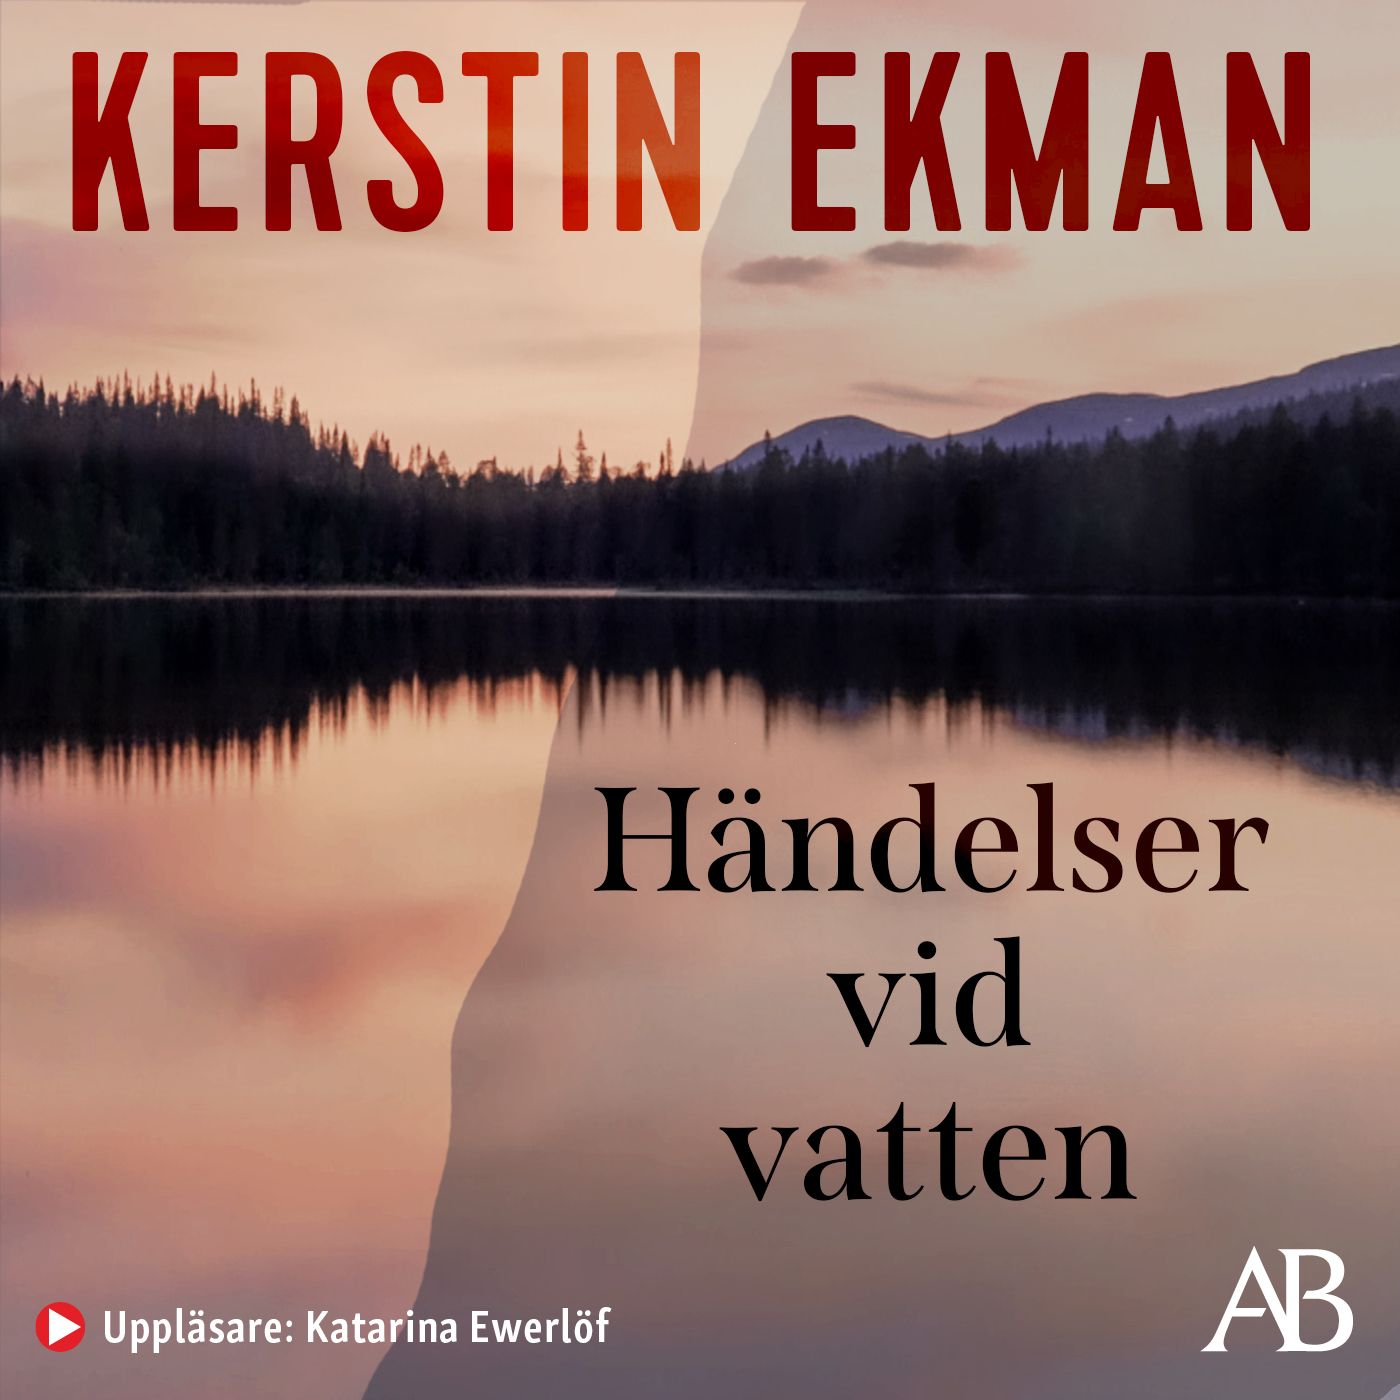 Händelser vid vatten, audiobook by Kerstin Ekman